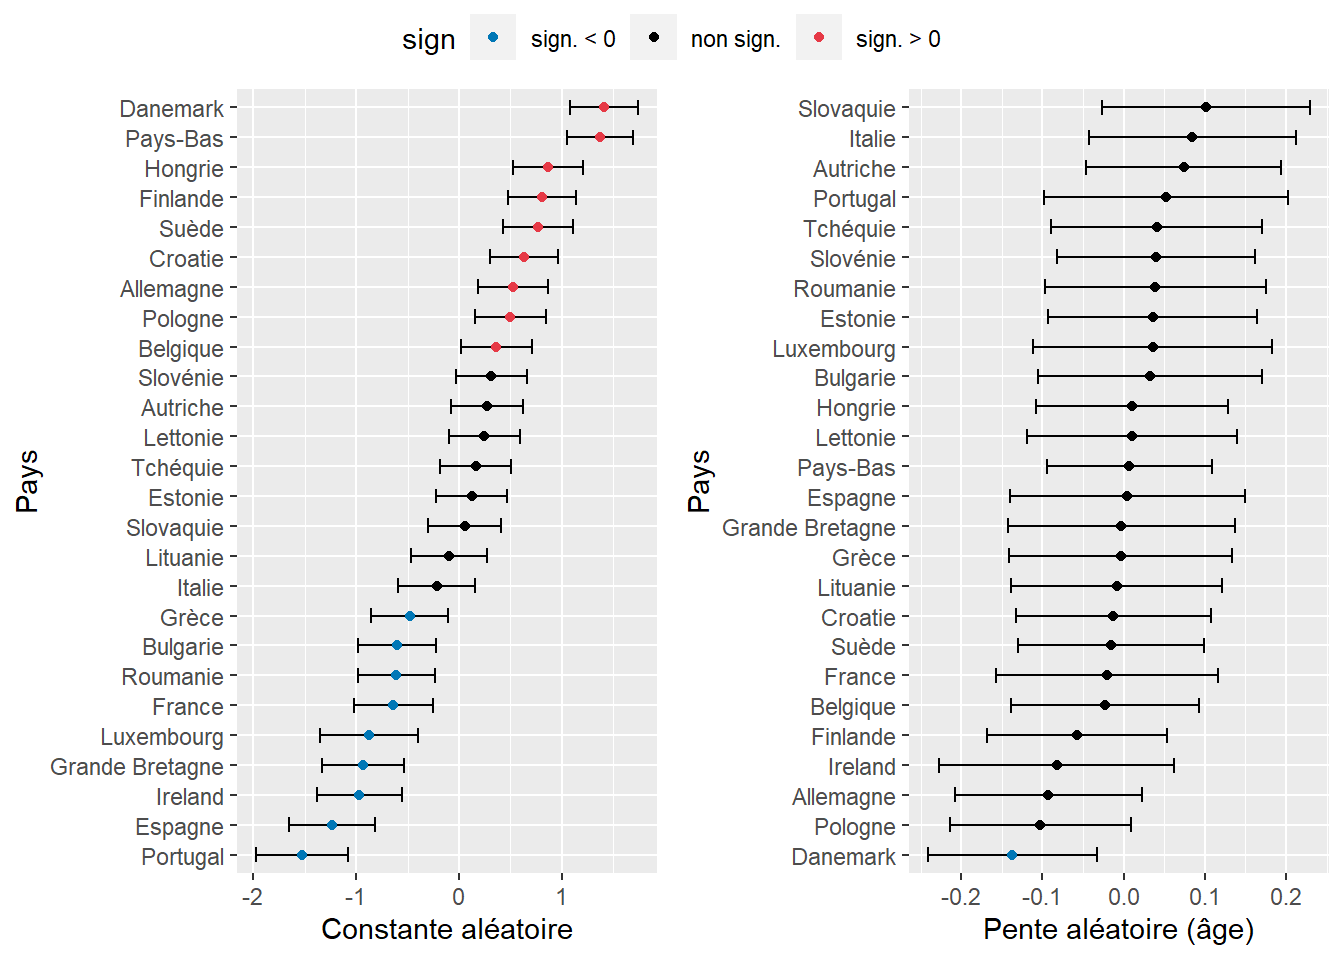 Constantes aléatoires estimées par pays (intervalles de confiance obtenus par simulations)